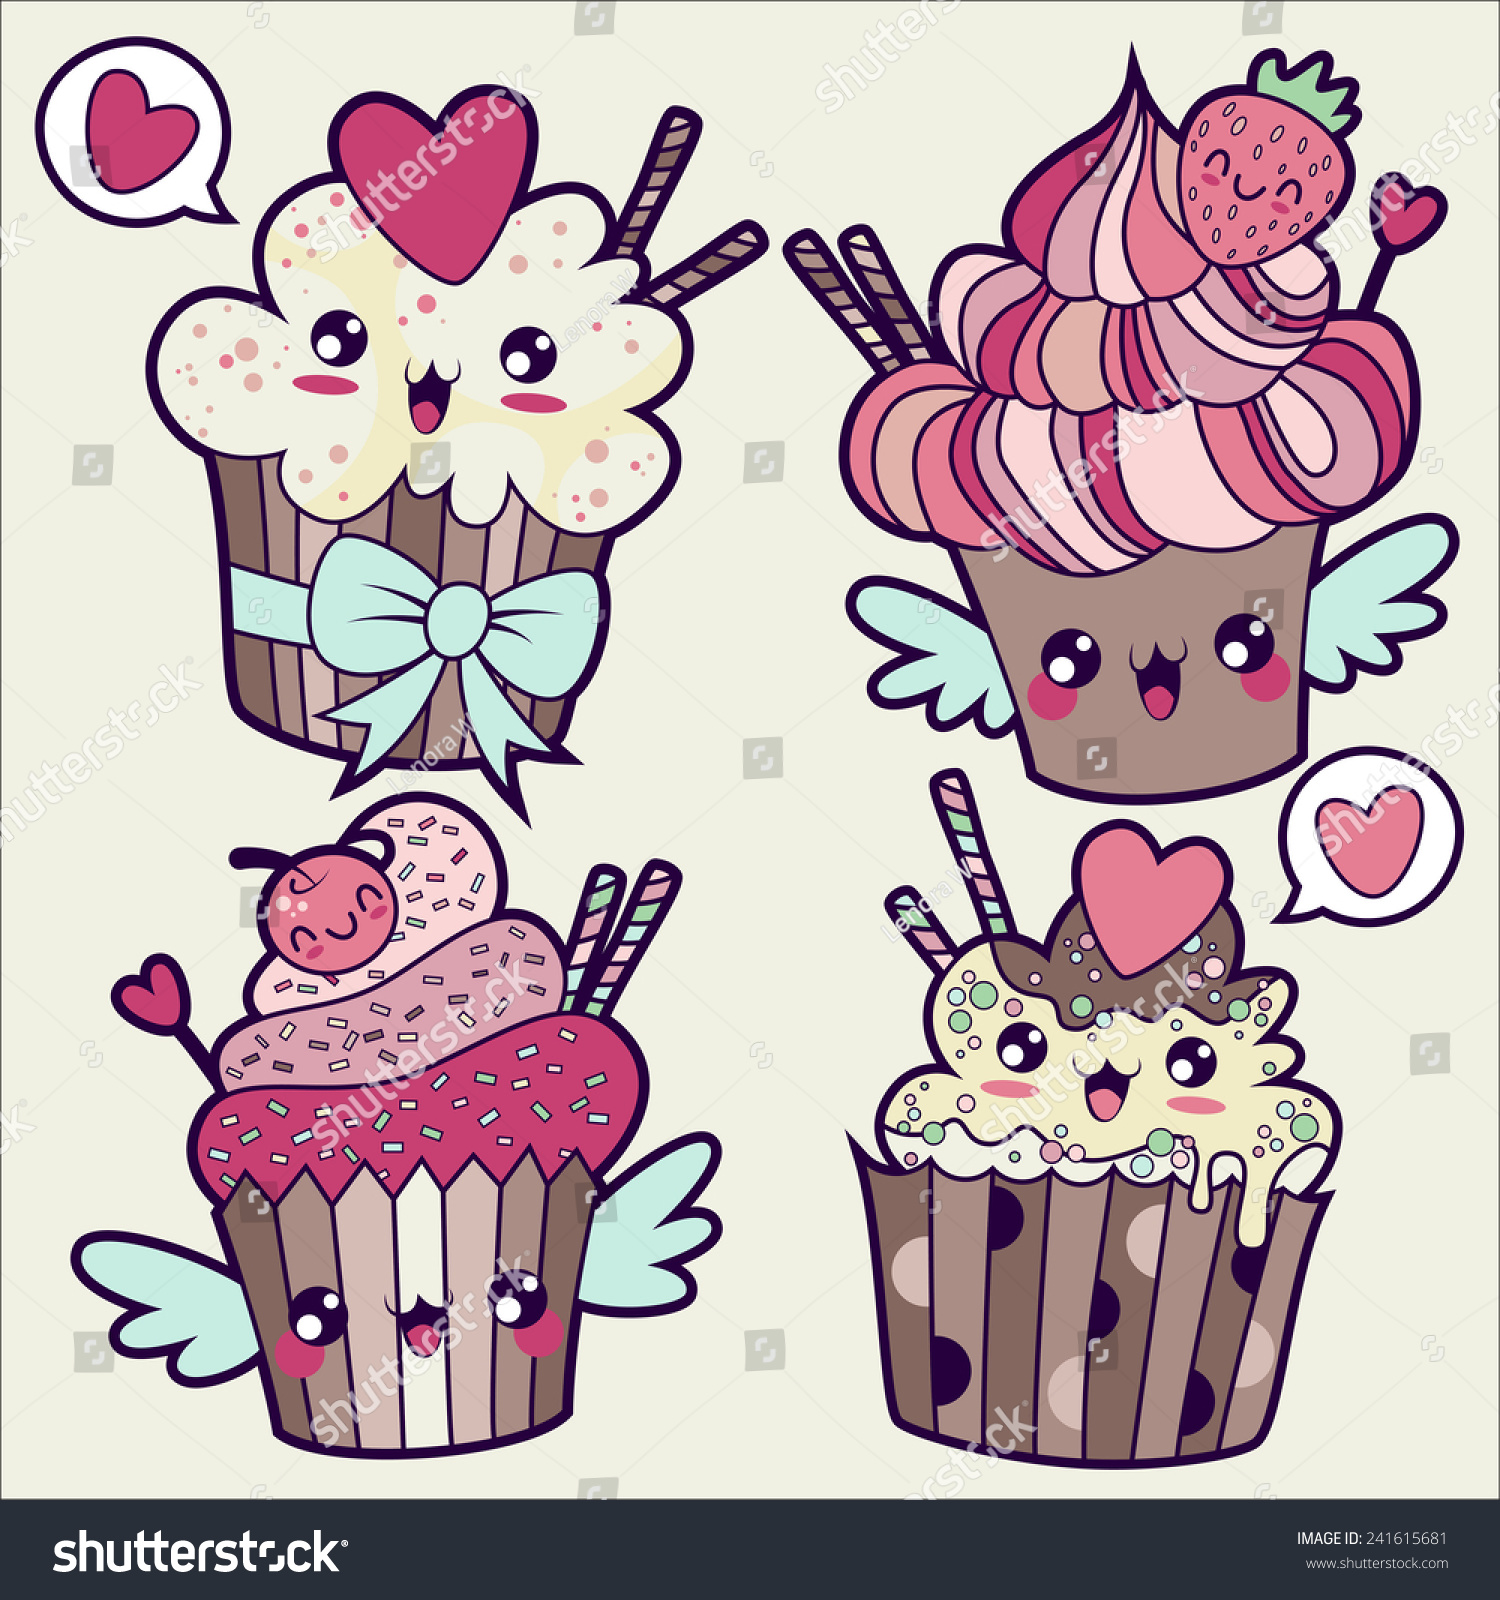 Image Vectorielle De Stock De Illustration Vectorielle Cupcakes Aux Styles Kawaii